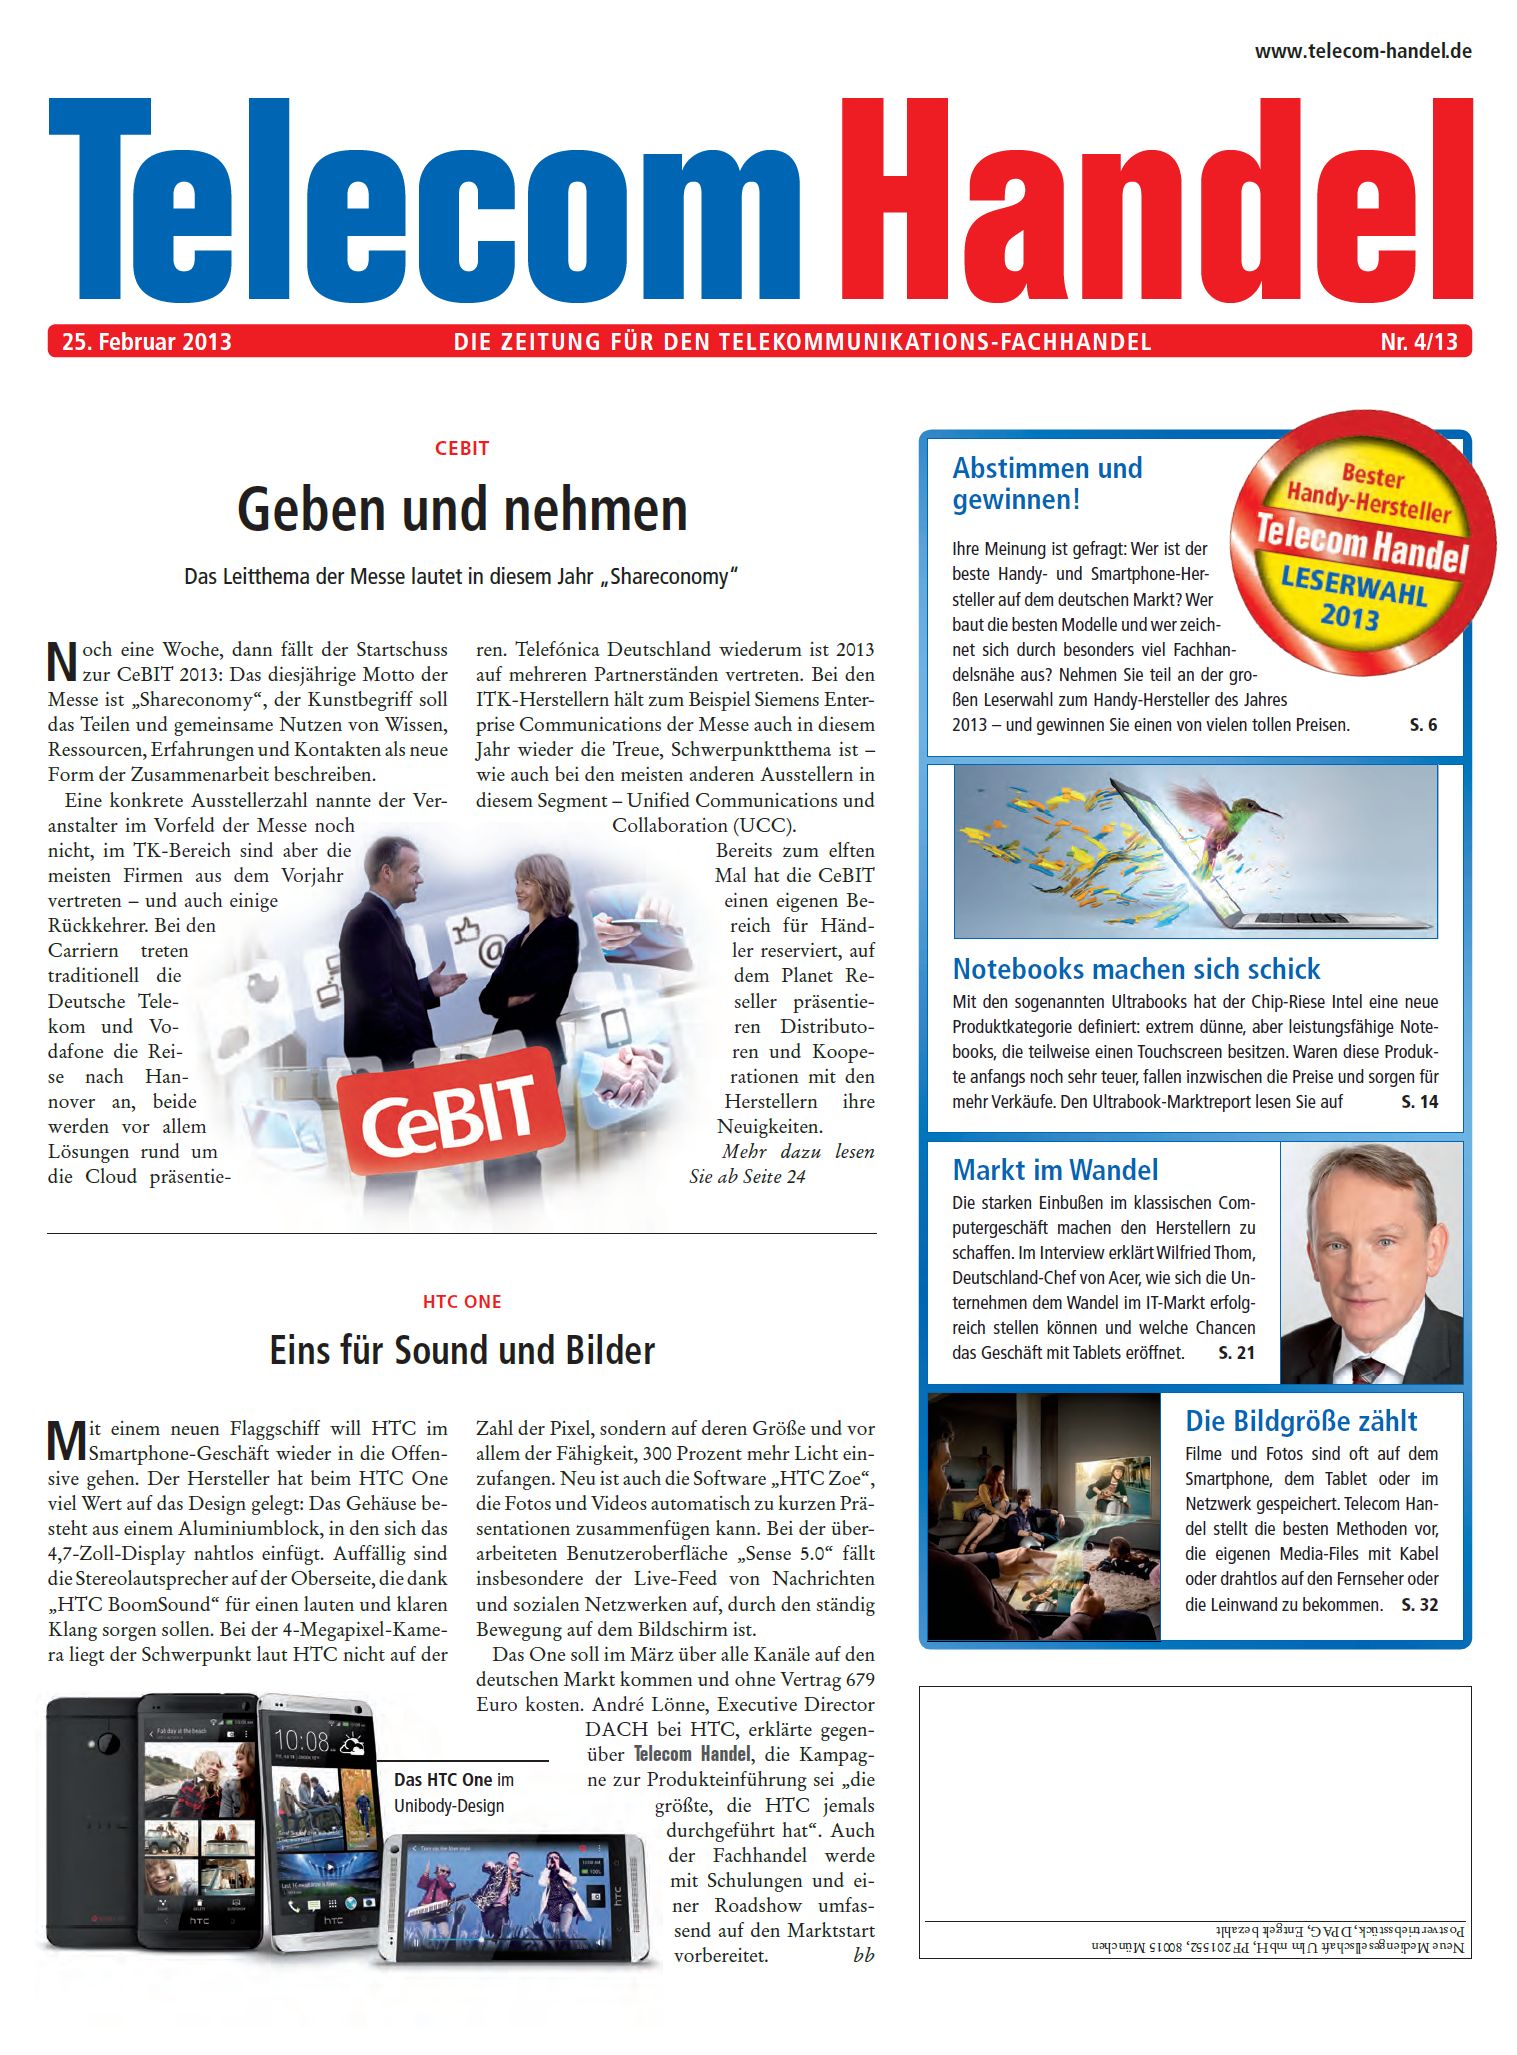 Telecom Handel Ausgabe 04/2013